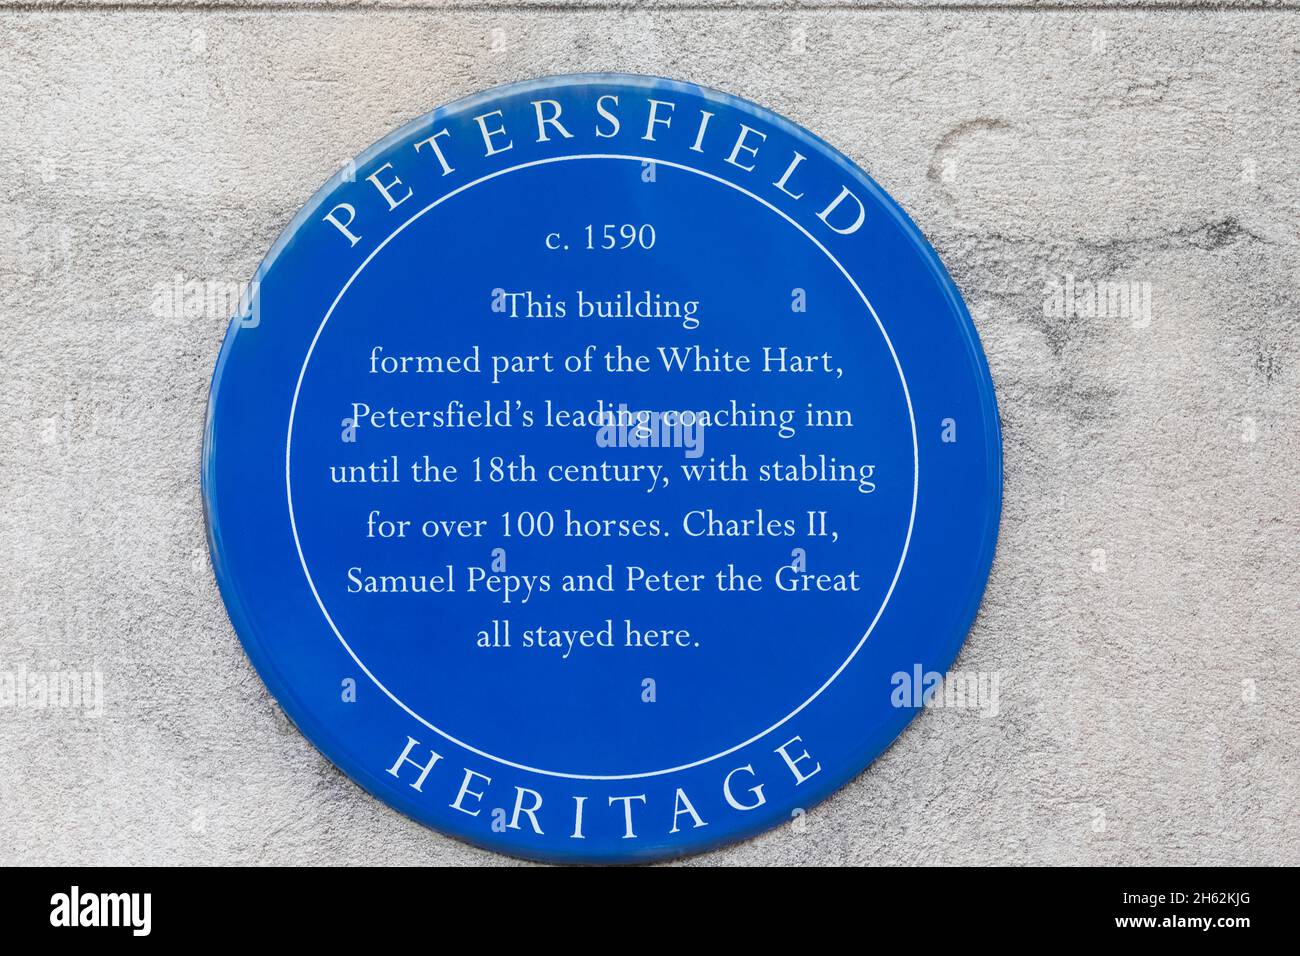 inghilterra, hampshire, petersfield, targa blu che indica la storia di un edificio una volta parte del coaching principale di petersfield nel bianco hart Foto Stock